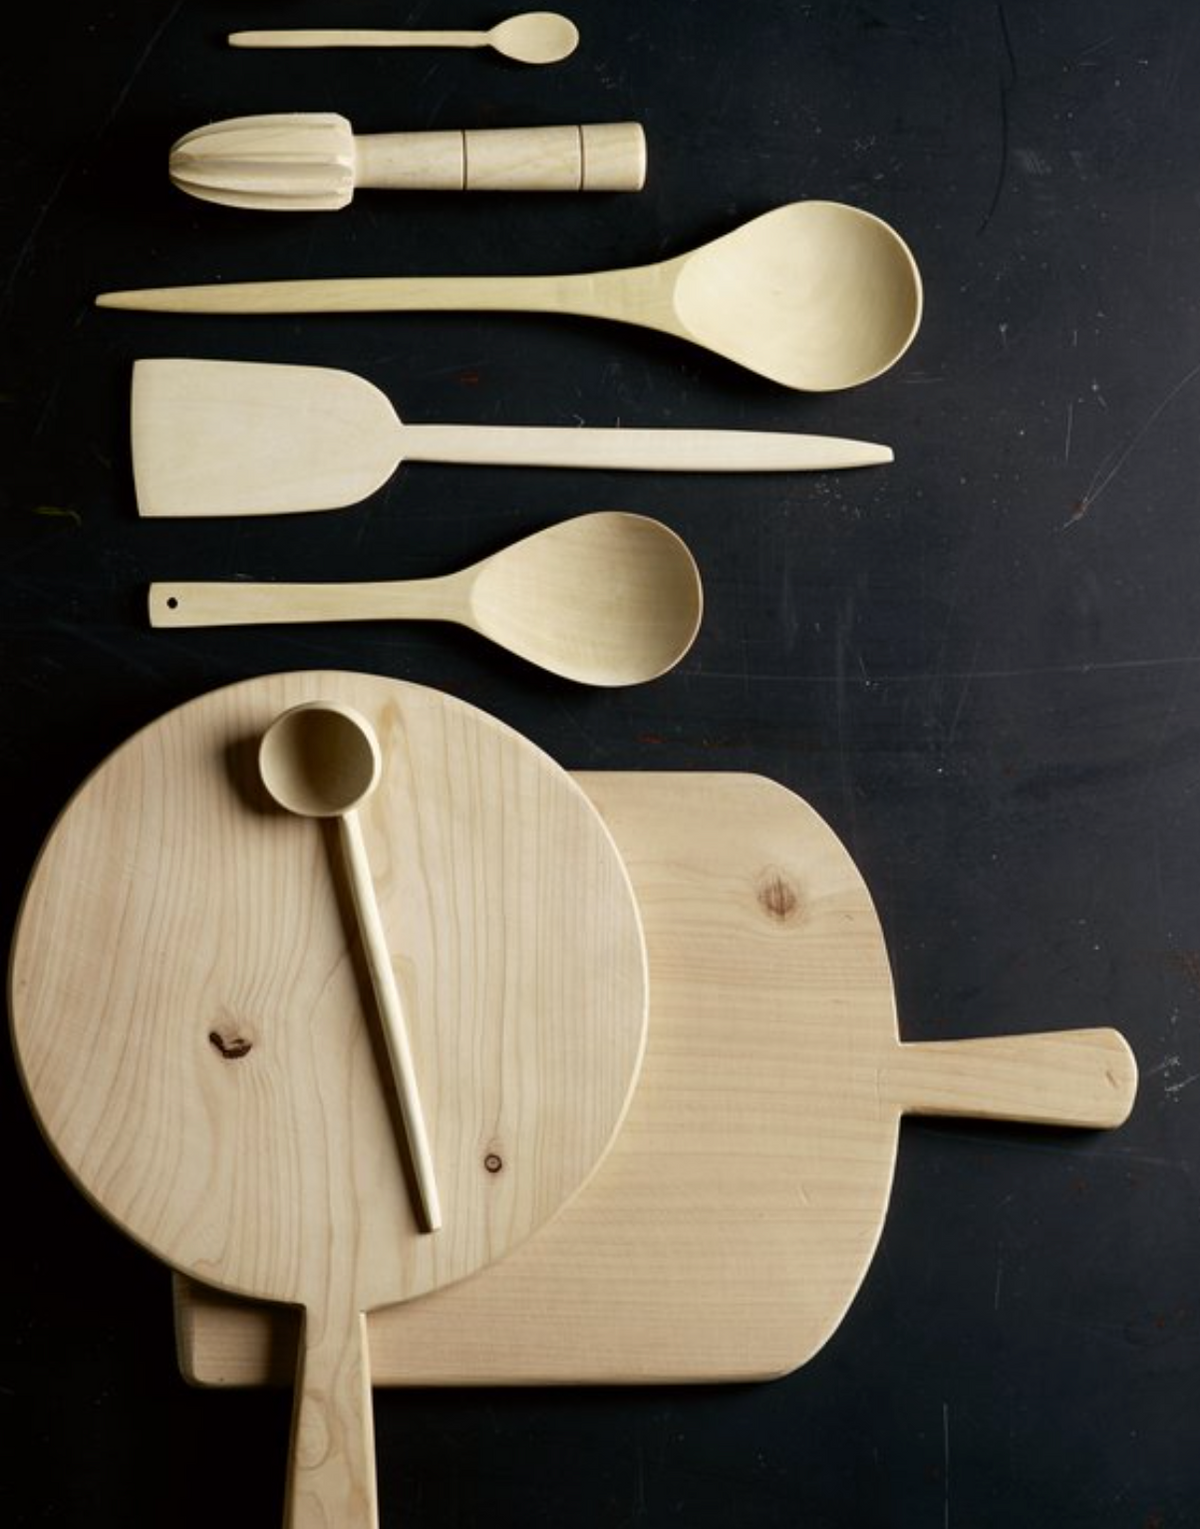 Holzlöffel in verschiedenen Größen und Formen. von Tine K. für die schlichte Küche mit schöner Küchenausstattung